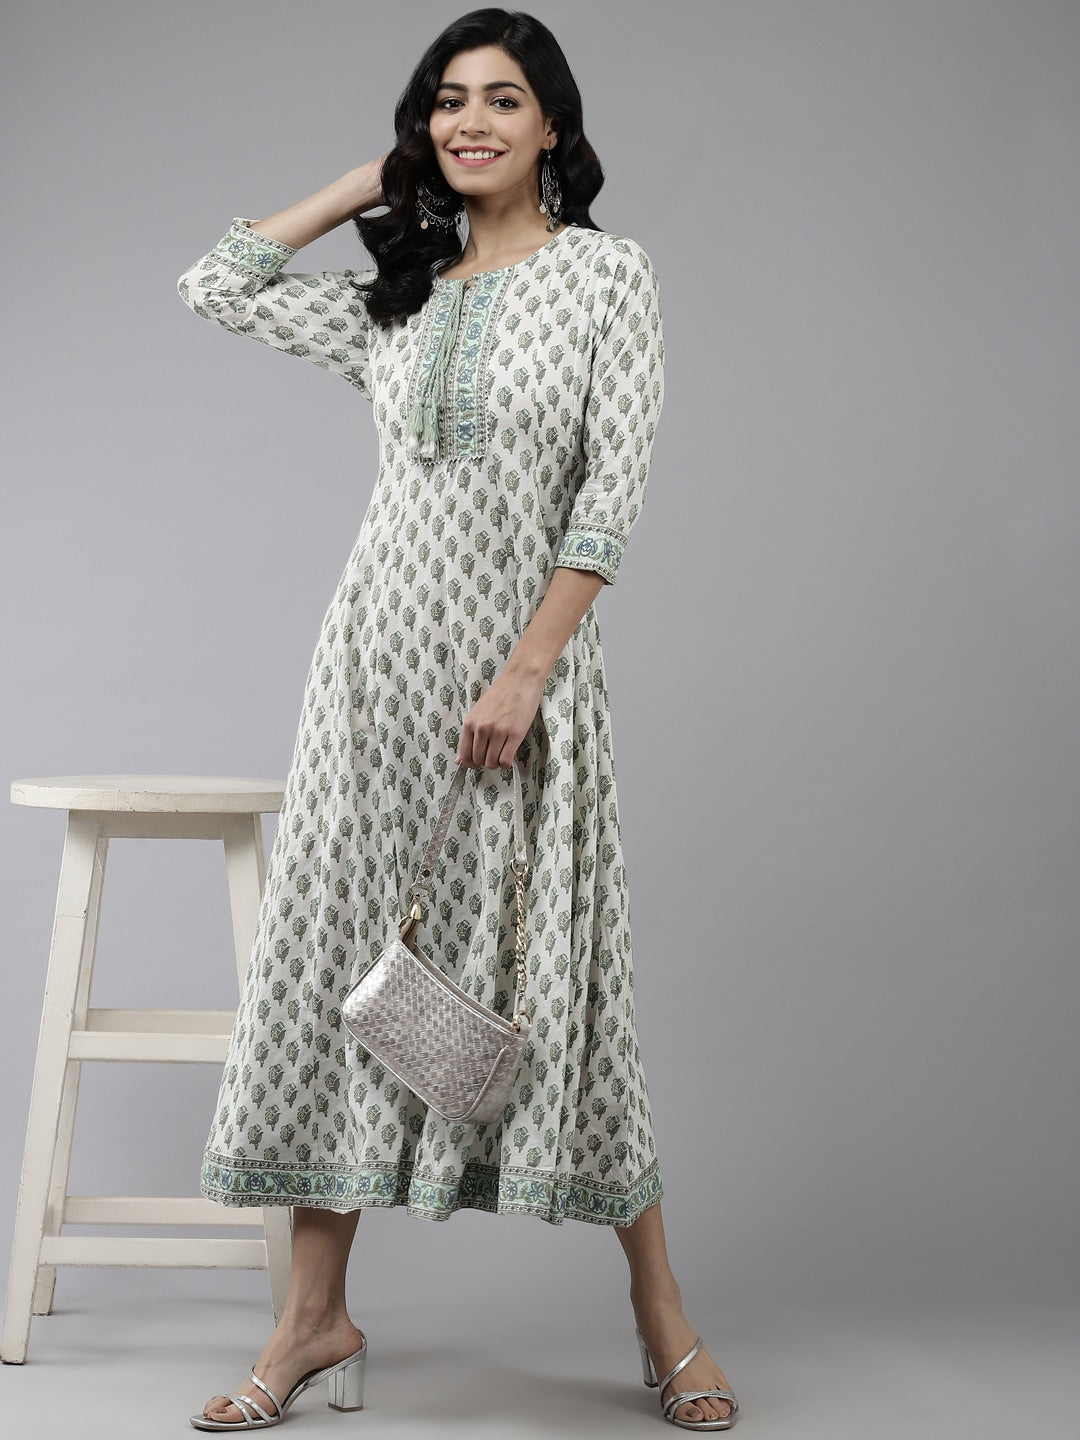 White & Green Ethnic Printed Dress-Yufta Store-7807KURWHS